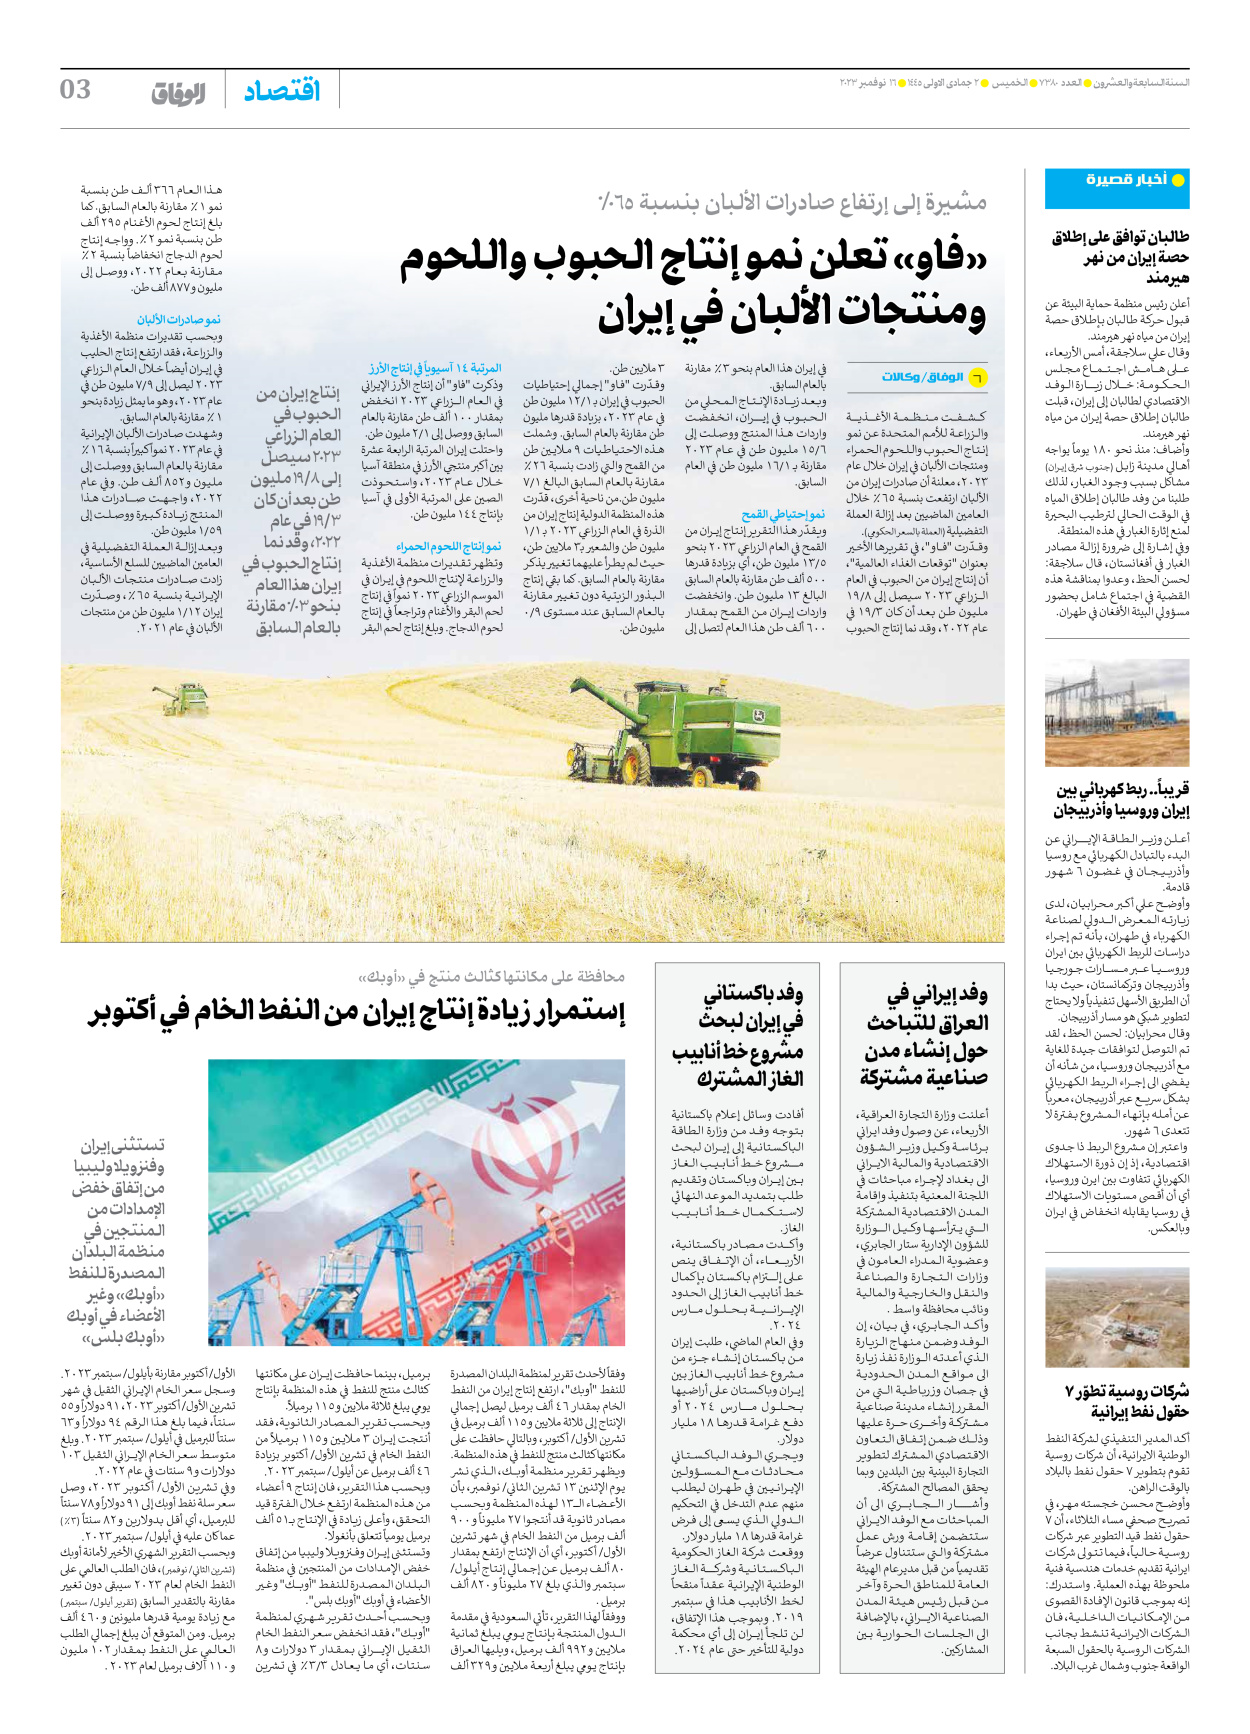 صحیفة ایران الدولیة الوفاق - العدد سبعة آلاف وثلاثمائة وثمانون - ١٦ نوفمبر ٢٠٢٣ - الصفحة ۳